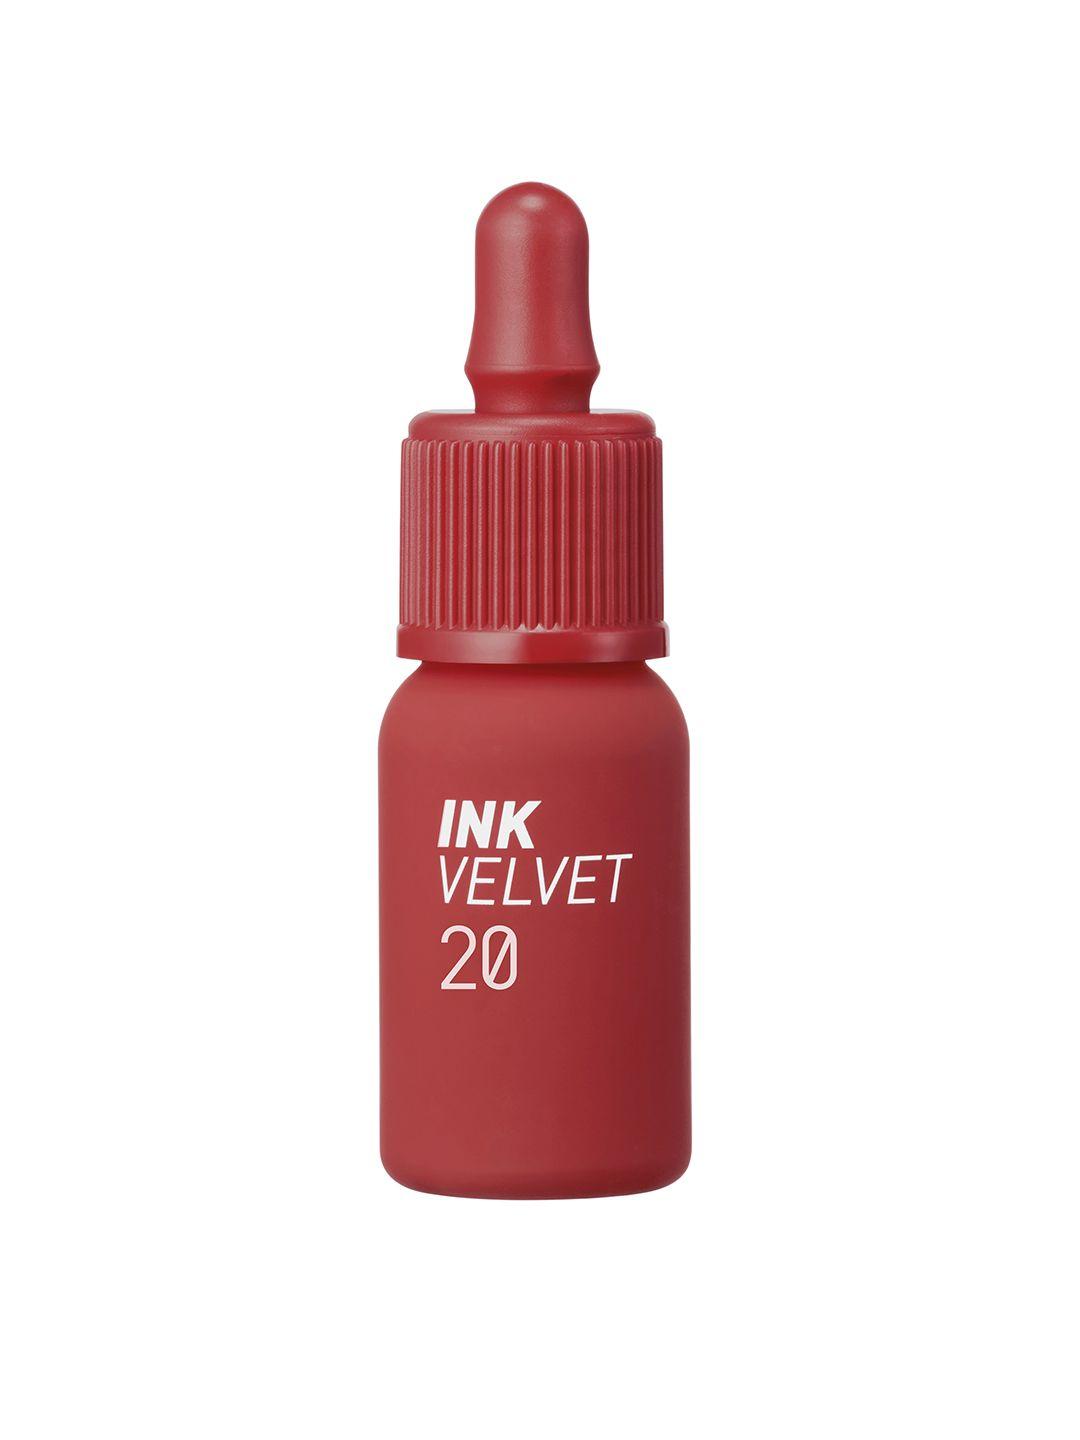 peripera ink velvet liquid lipstick 4g - classy plum rose 020